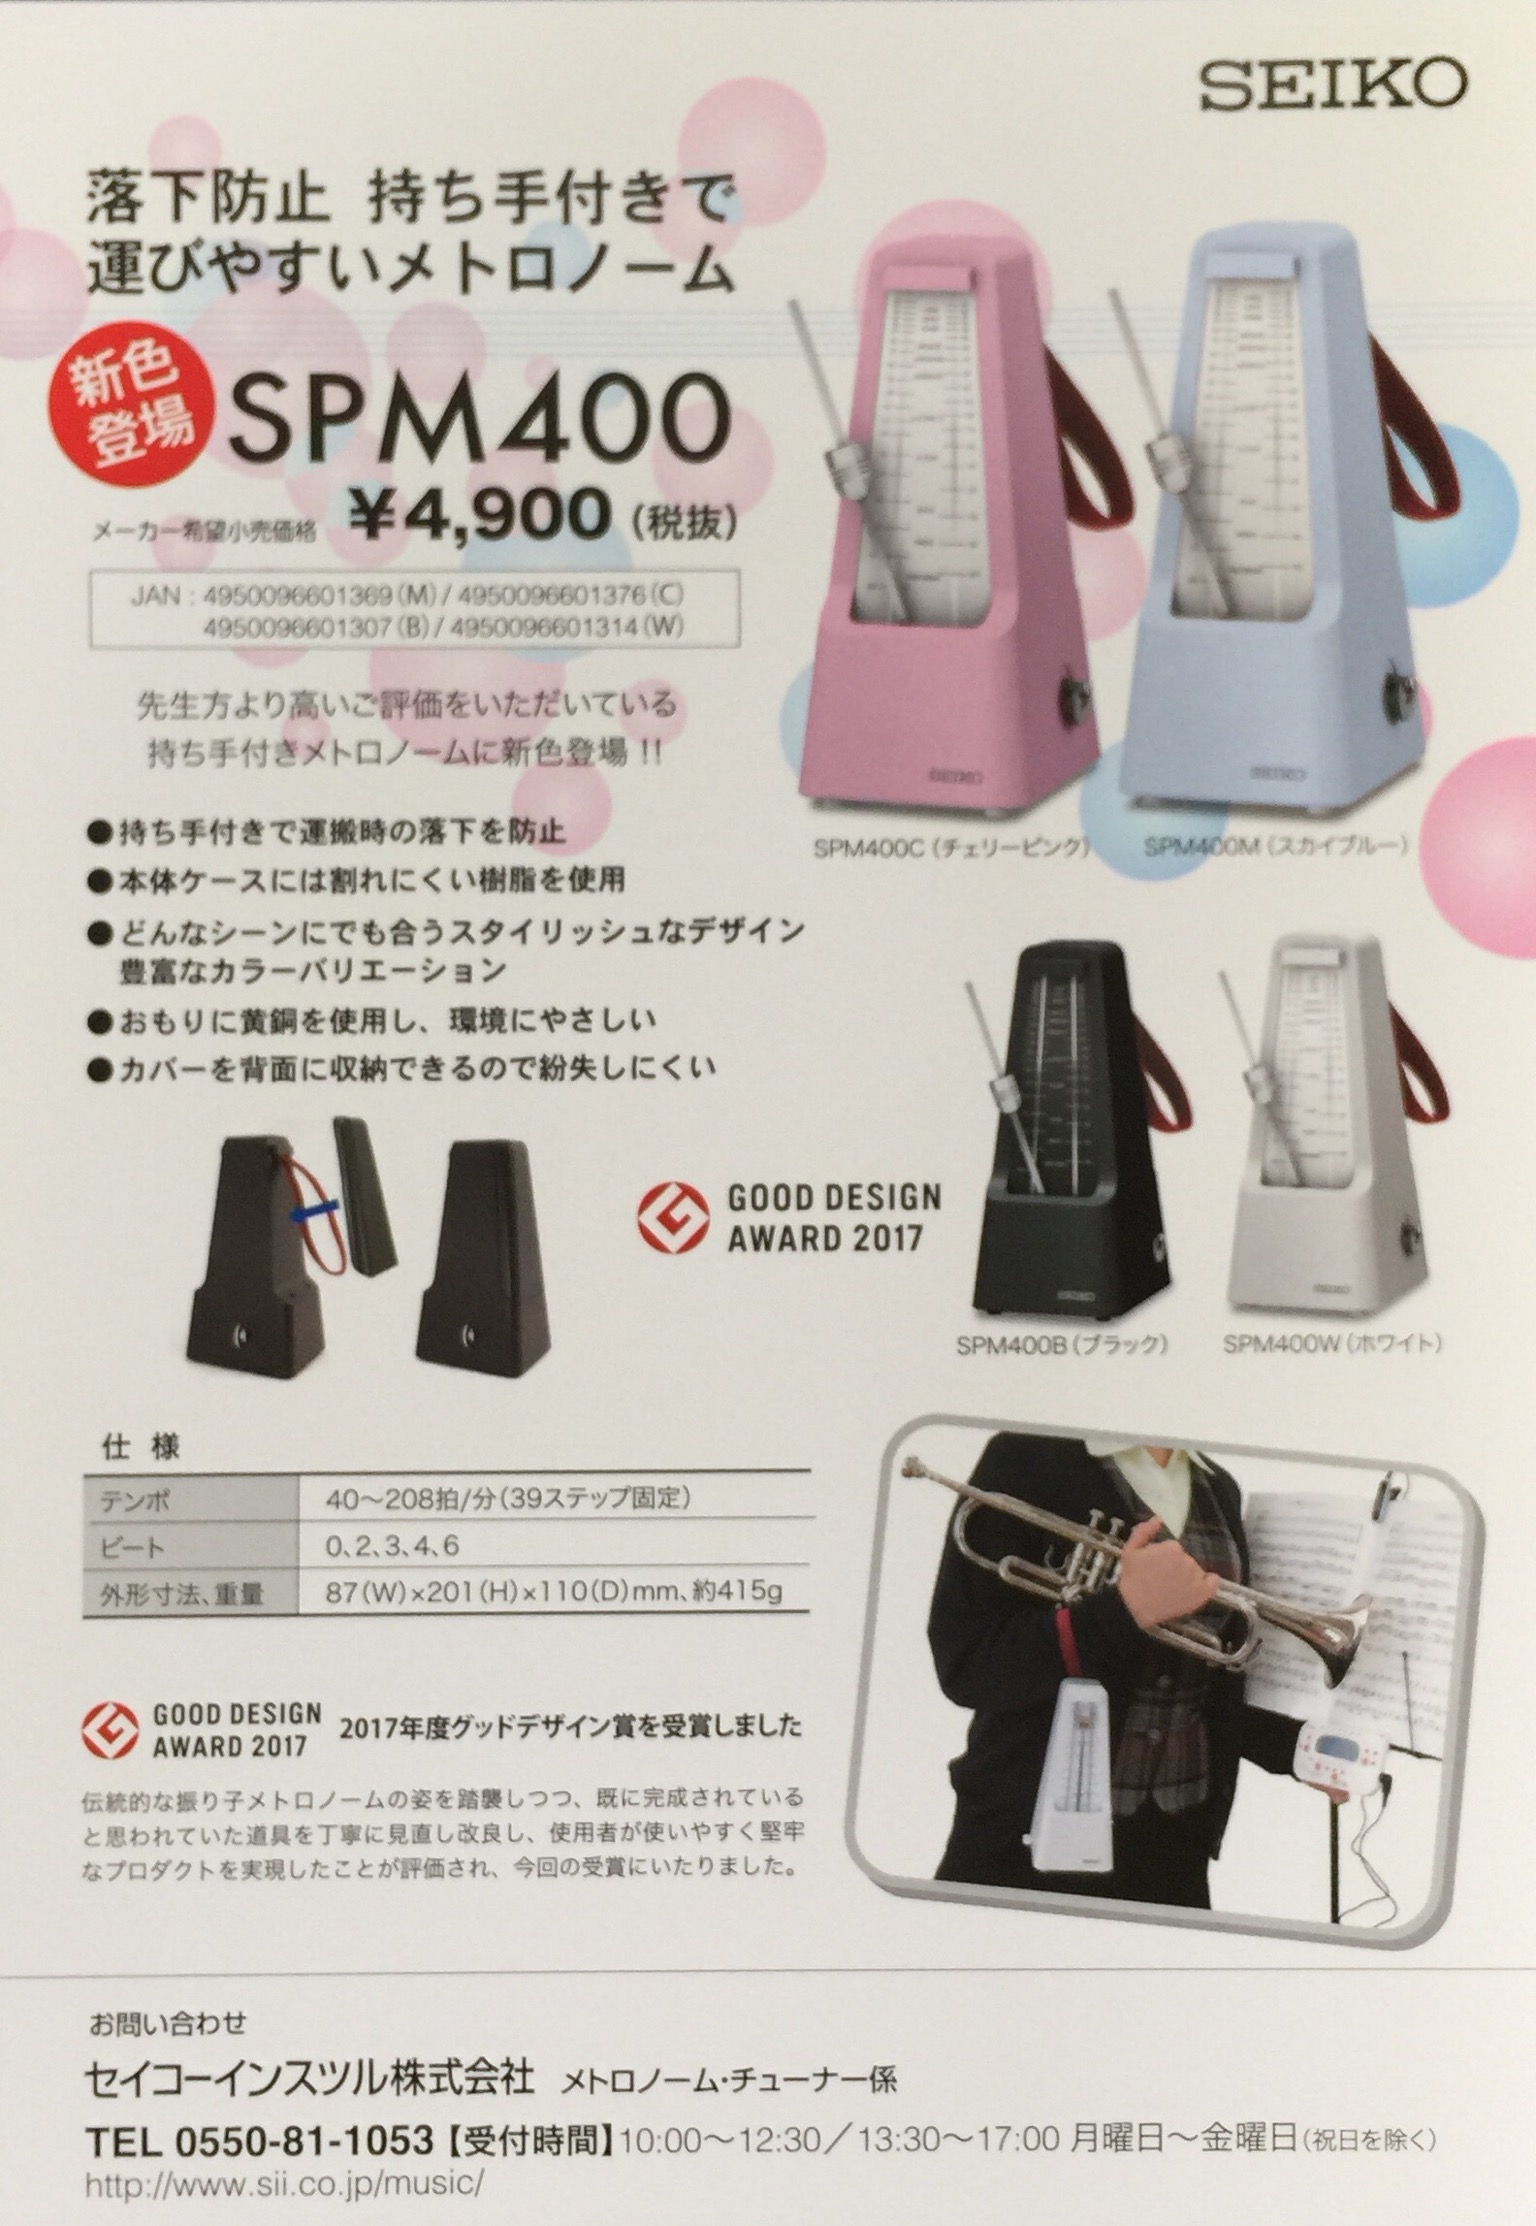 全品送料無料】 SEIKO SPM400B ブラック